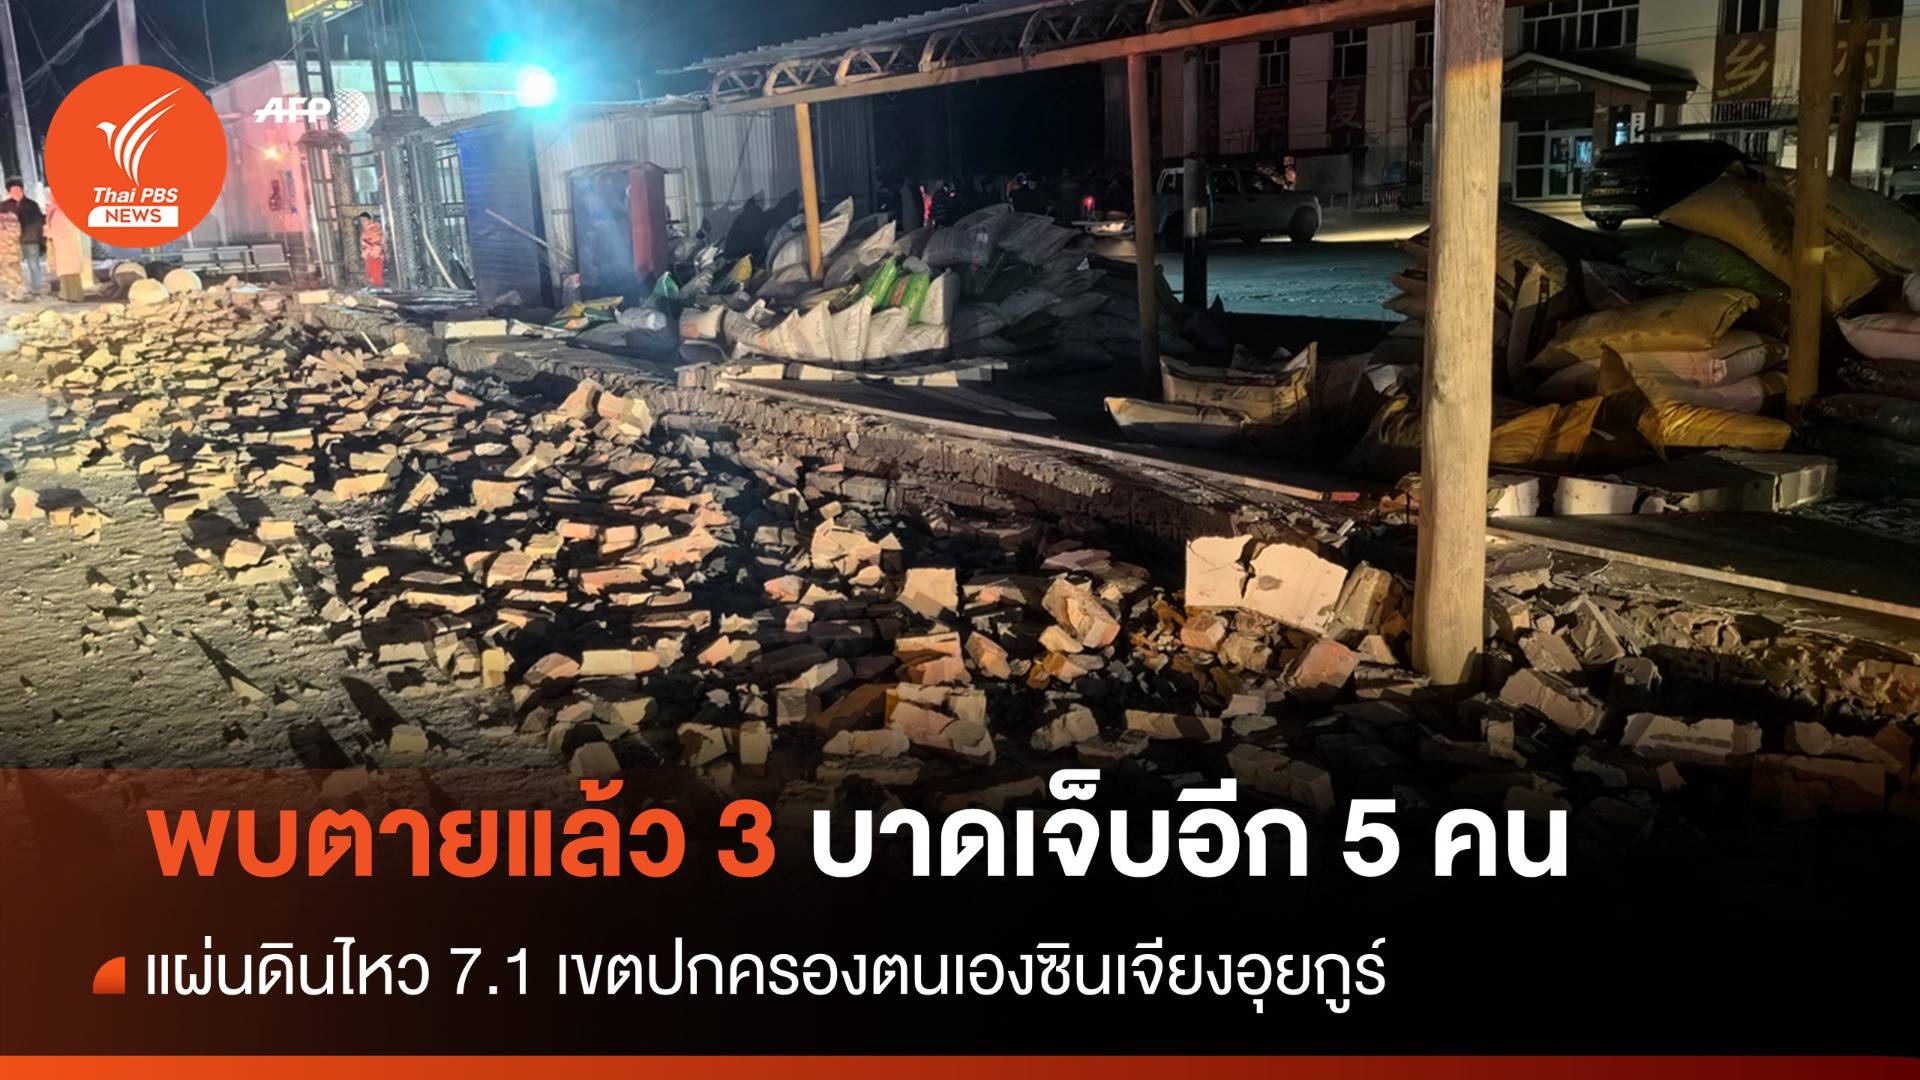 แผ่นดินไหว 7.1 ซินเจียงฯ พบตายแล้ว 3 คน อพยพอีกนับหมื่น